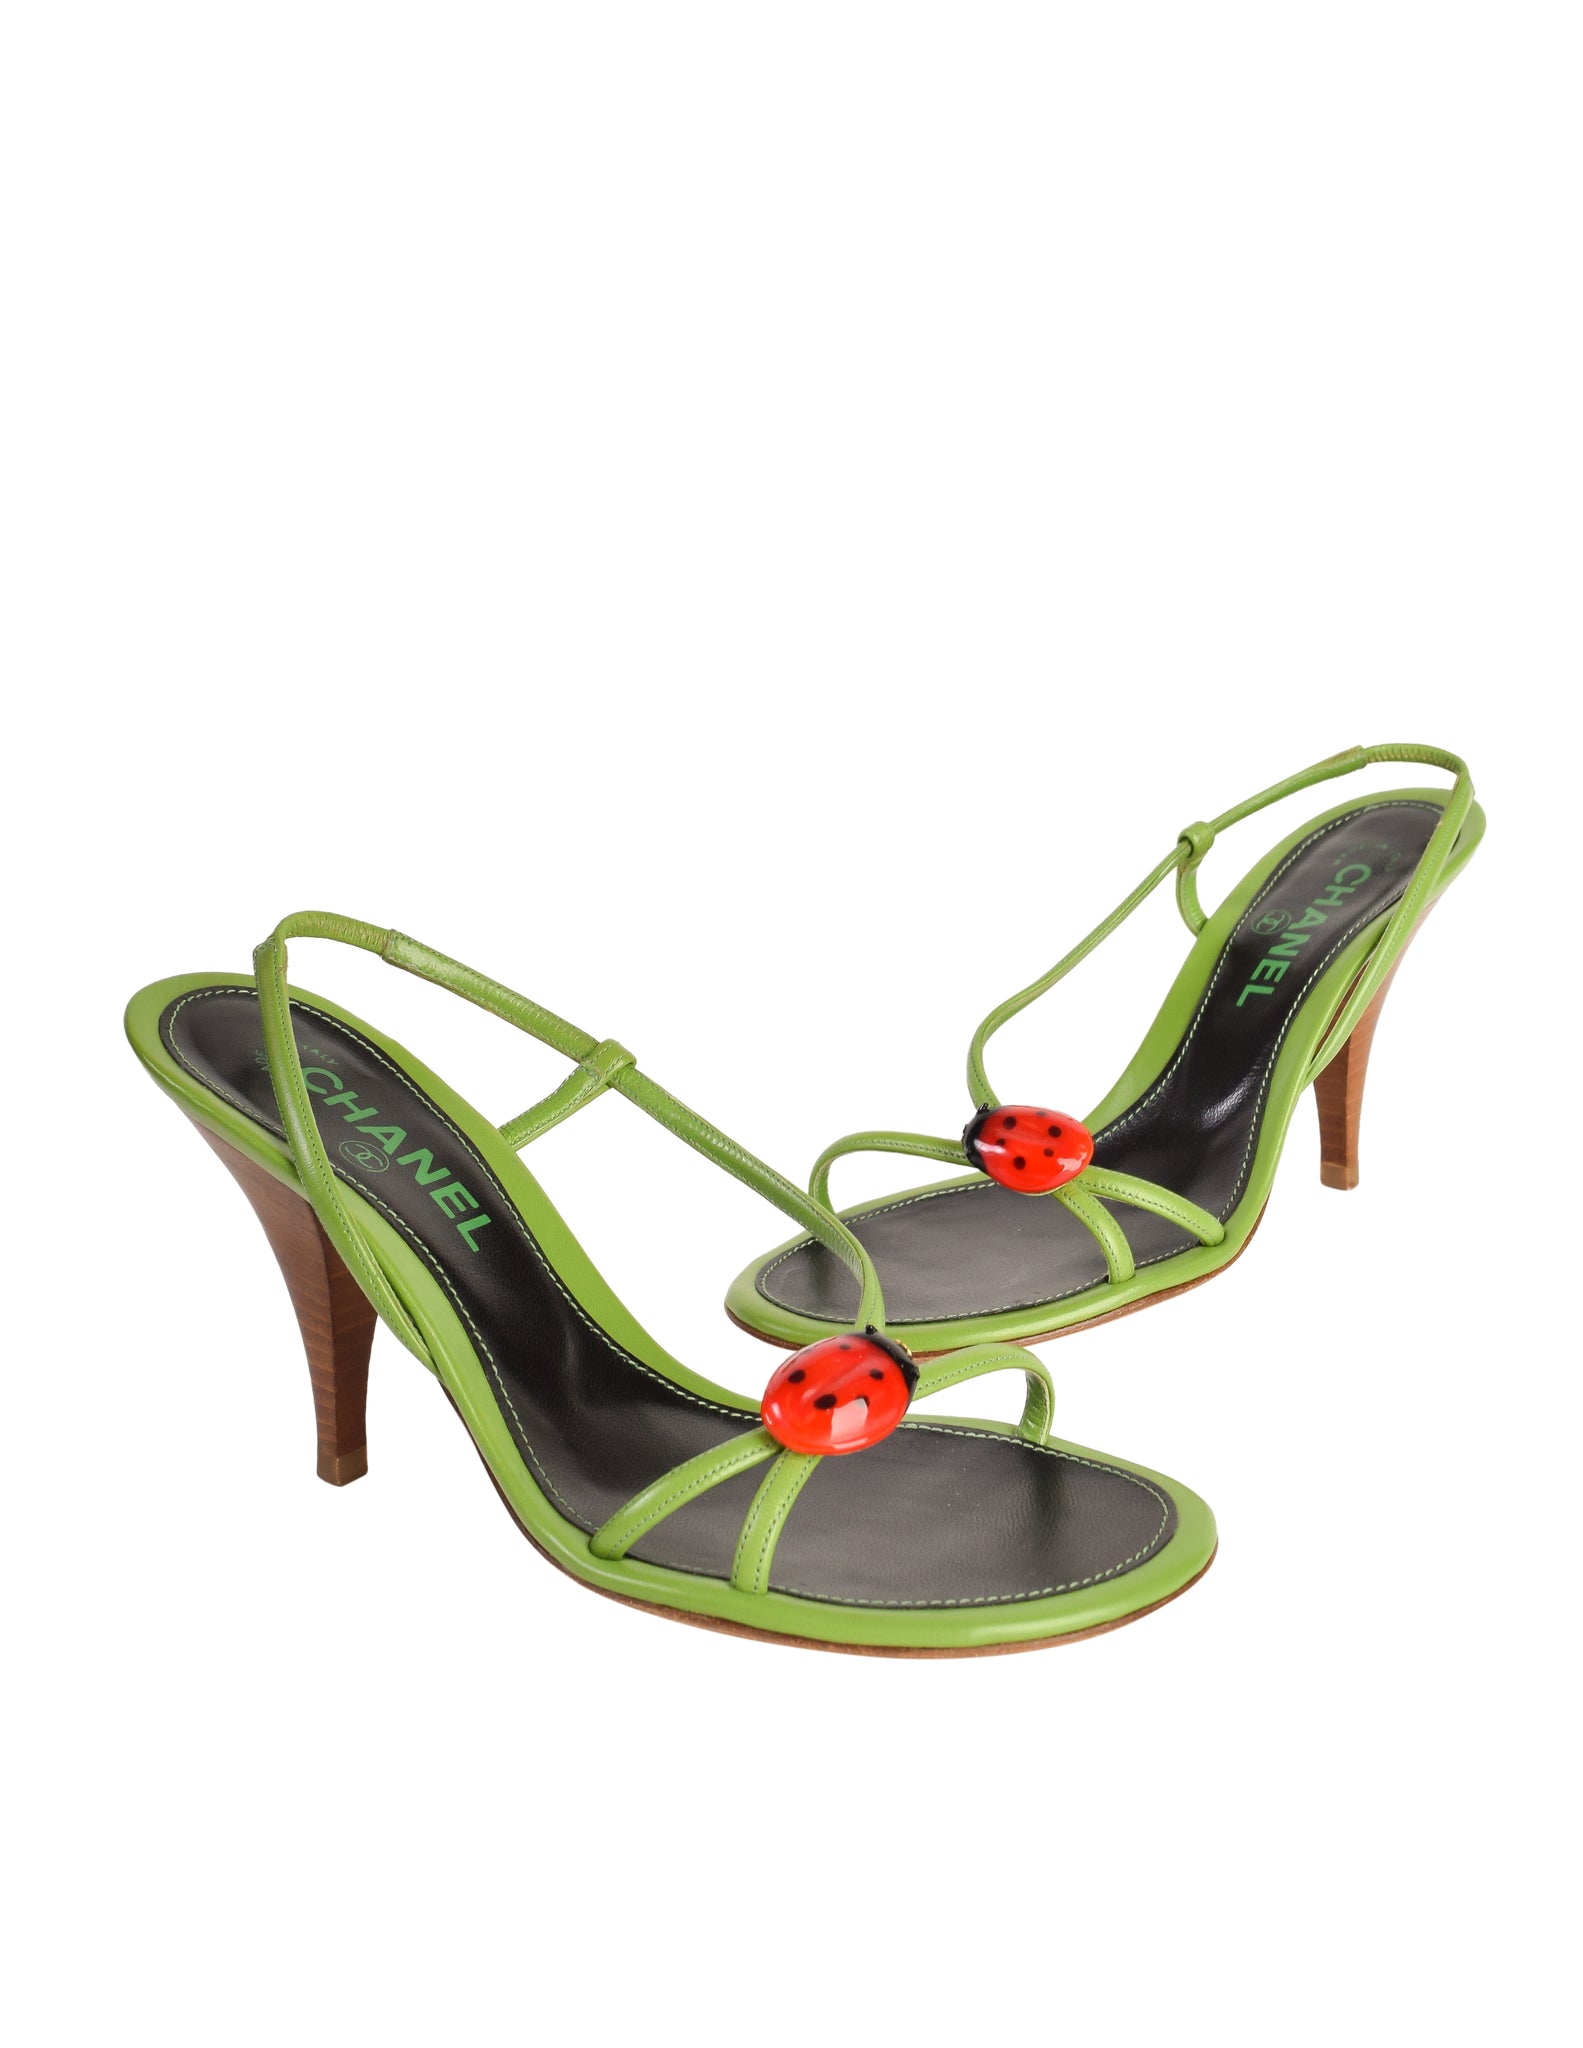 Chanel Vintage Ladybug Adorned Green Leather Strappy Slingback Sandal Heels